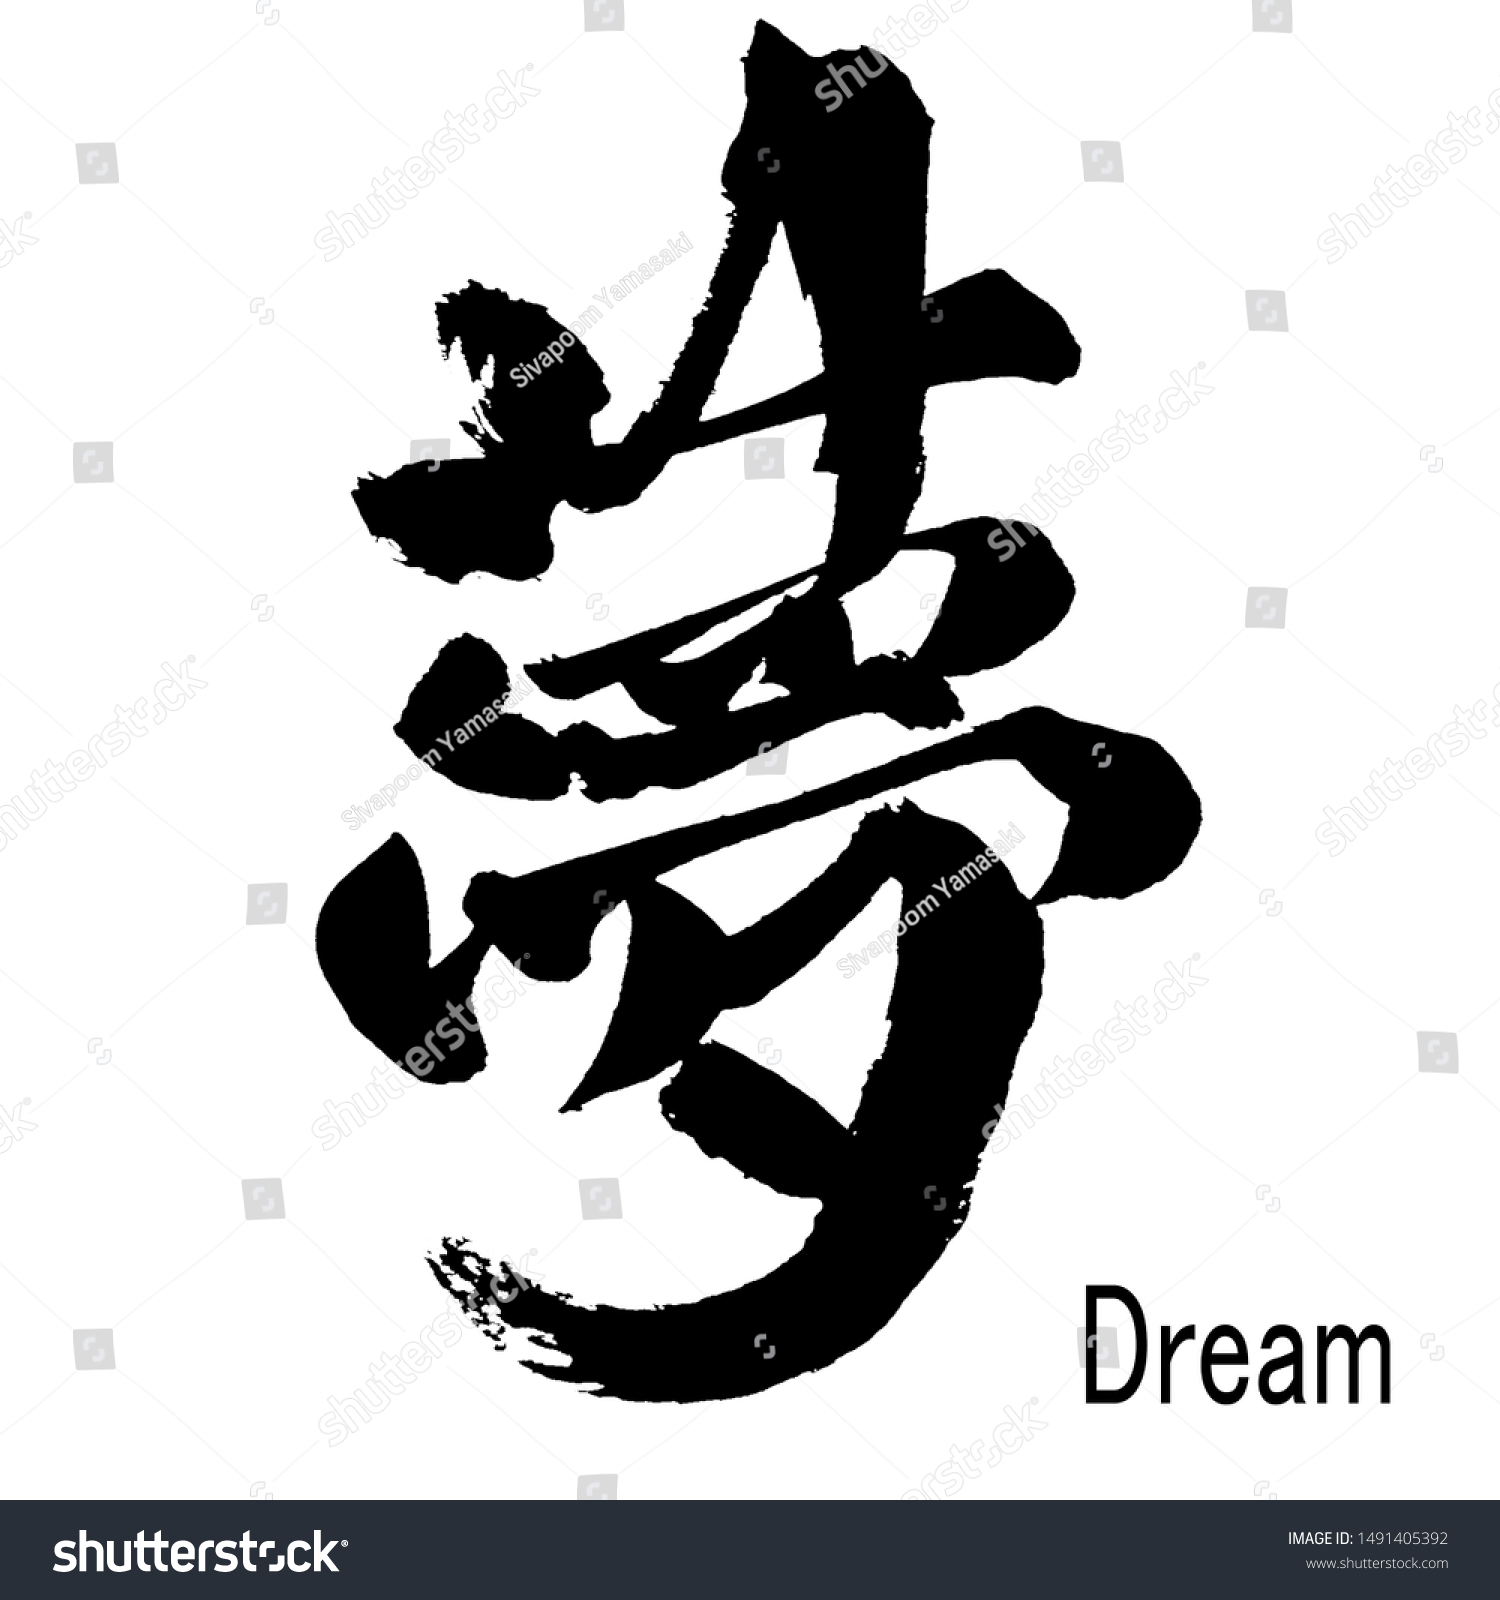 夢 の字の実筆漢字 のイラスト素材